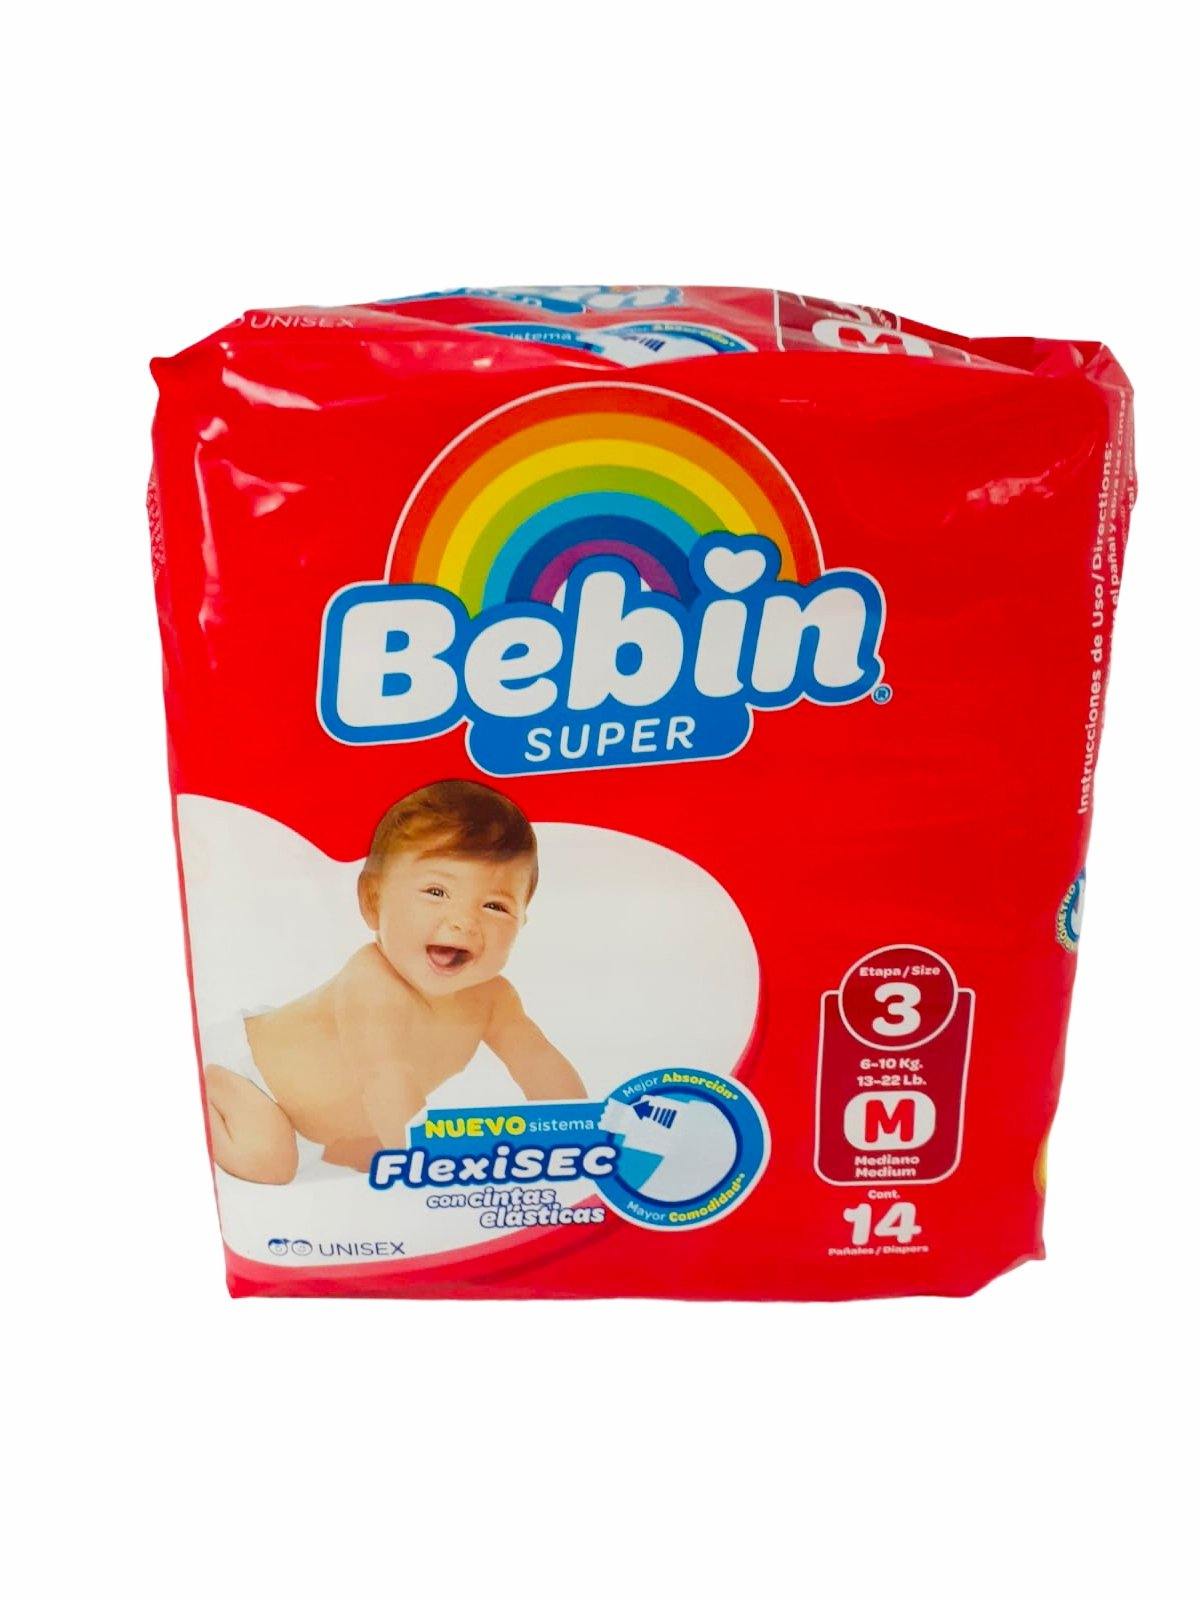 Bebin Super Diaper Chico Meduim 14X (Each)